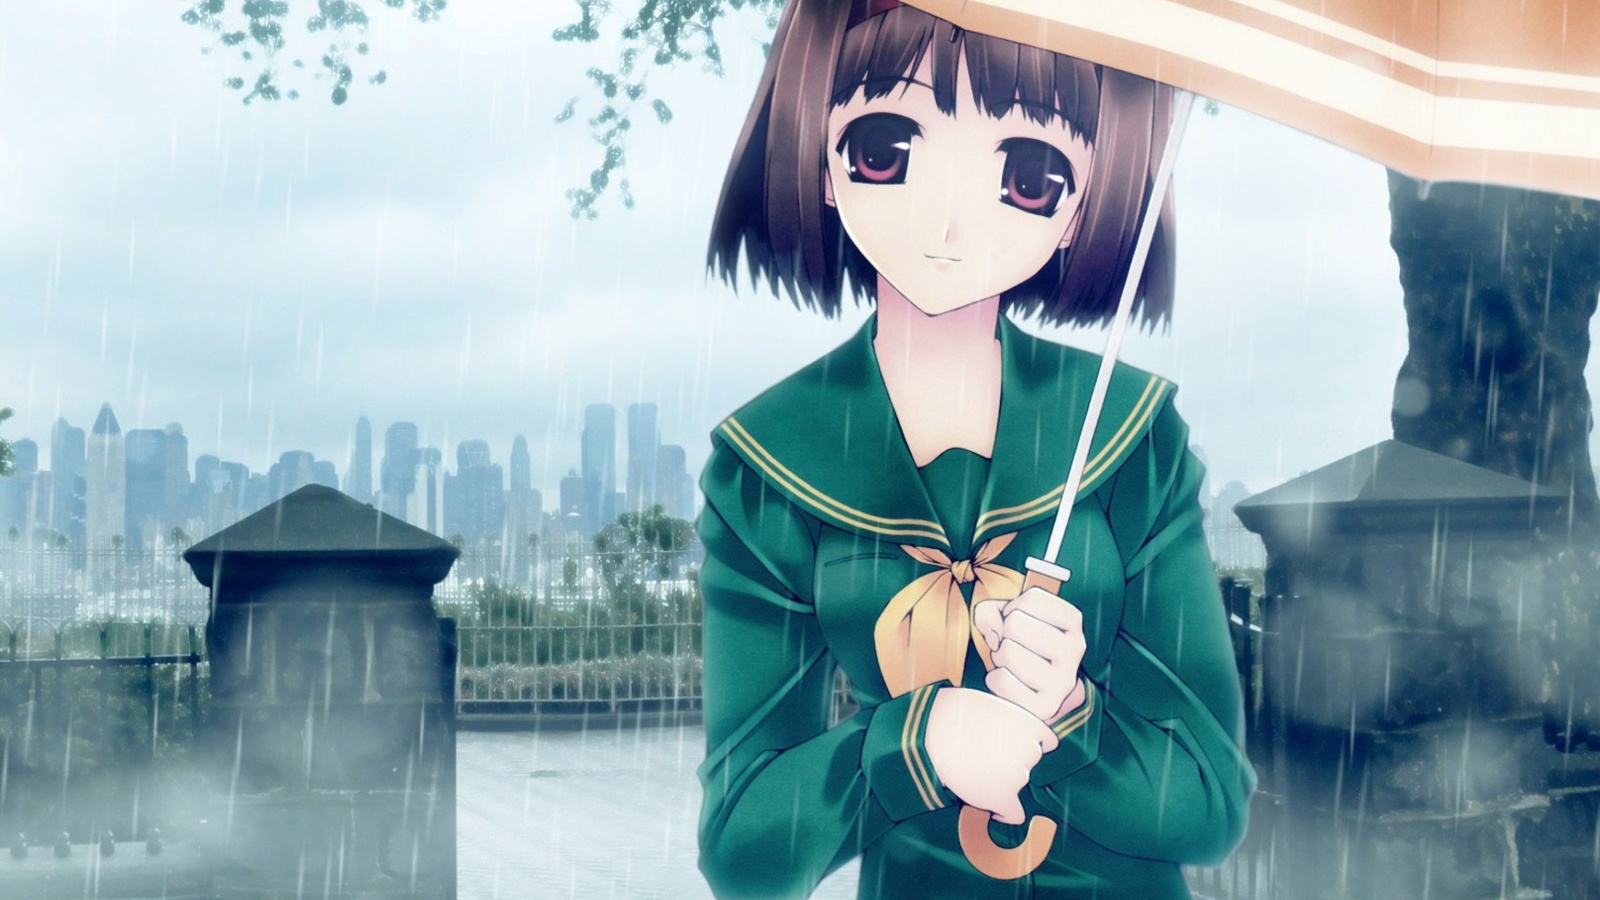 Sfondi Anime girl in rain 1600x900